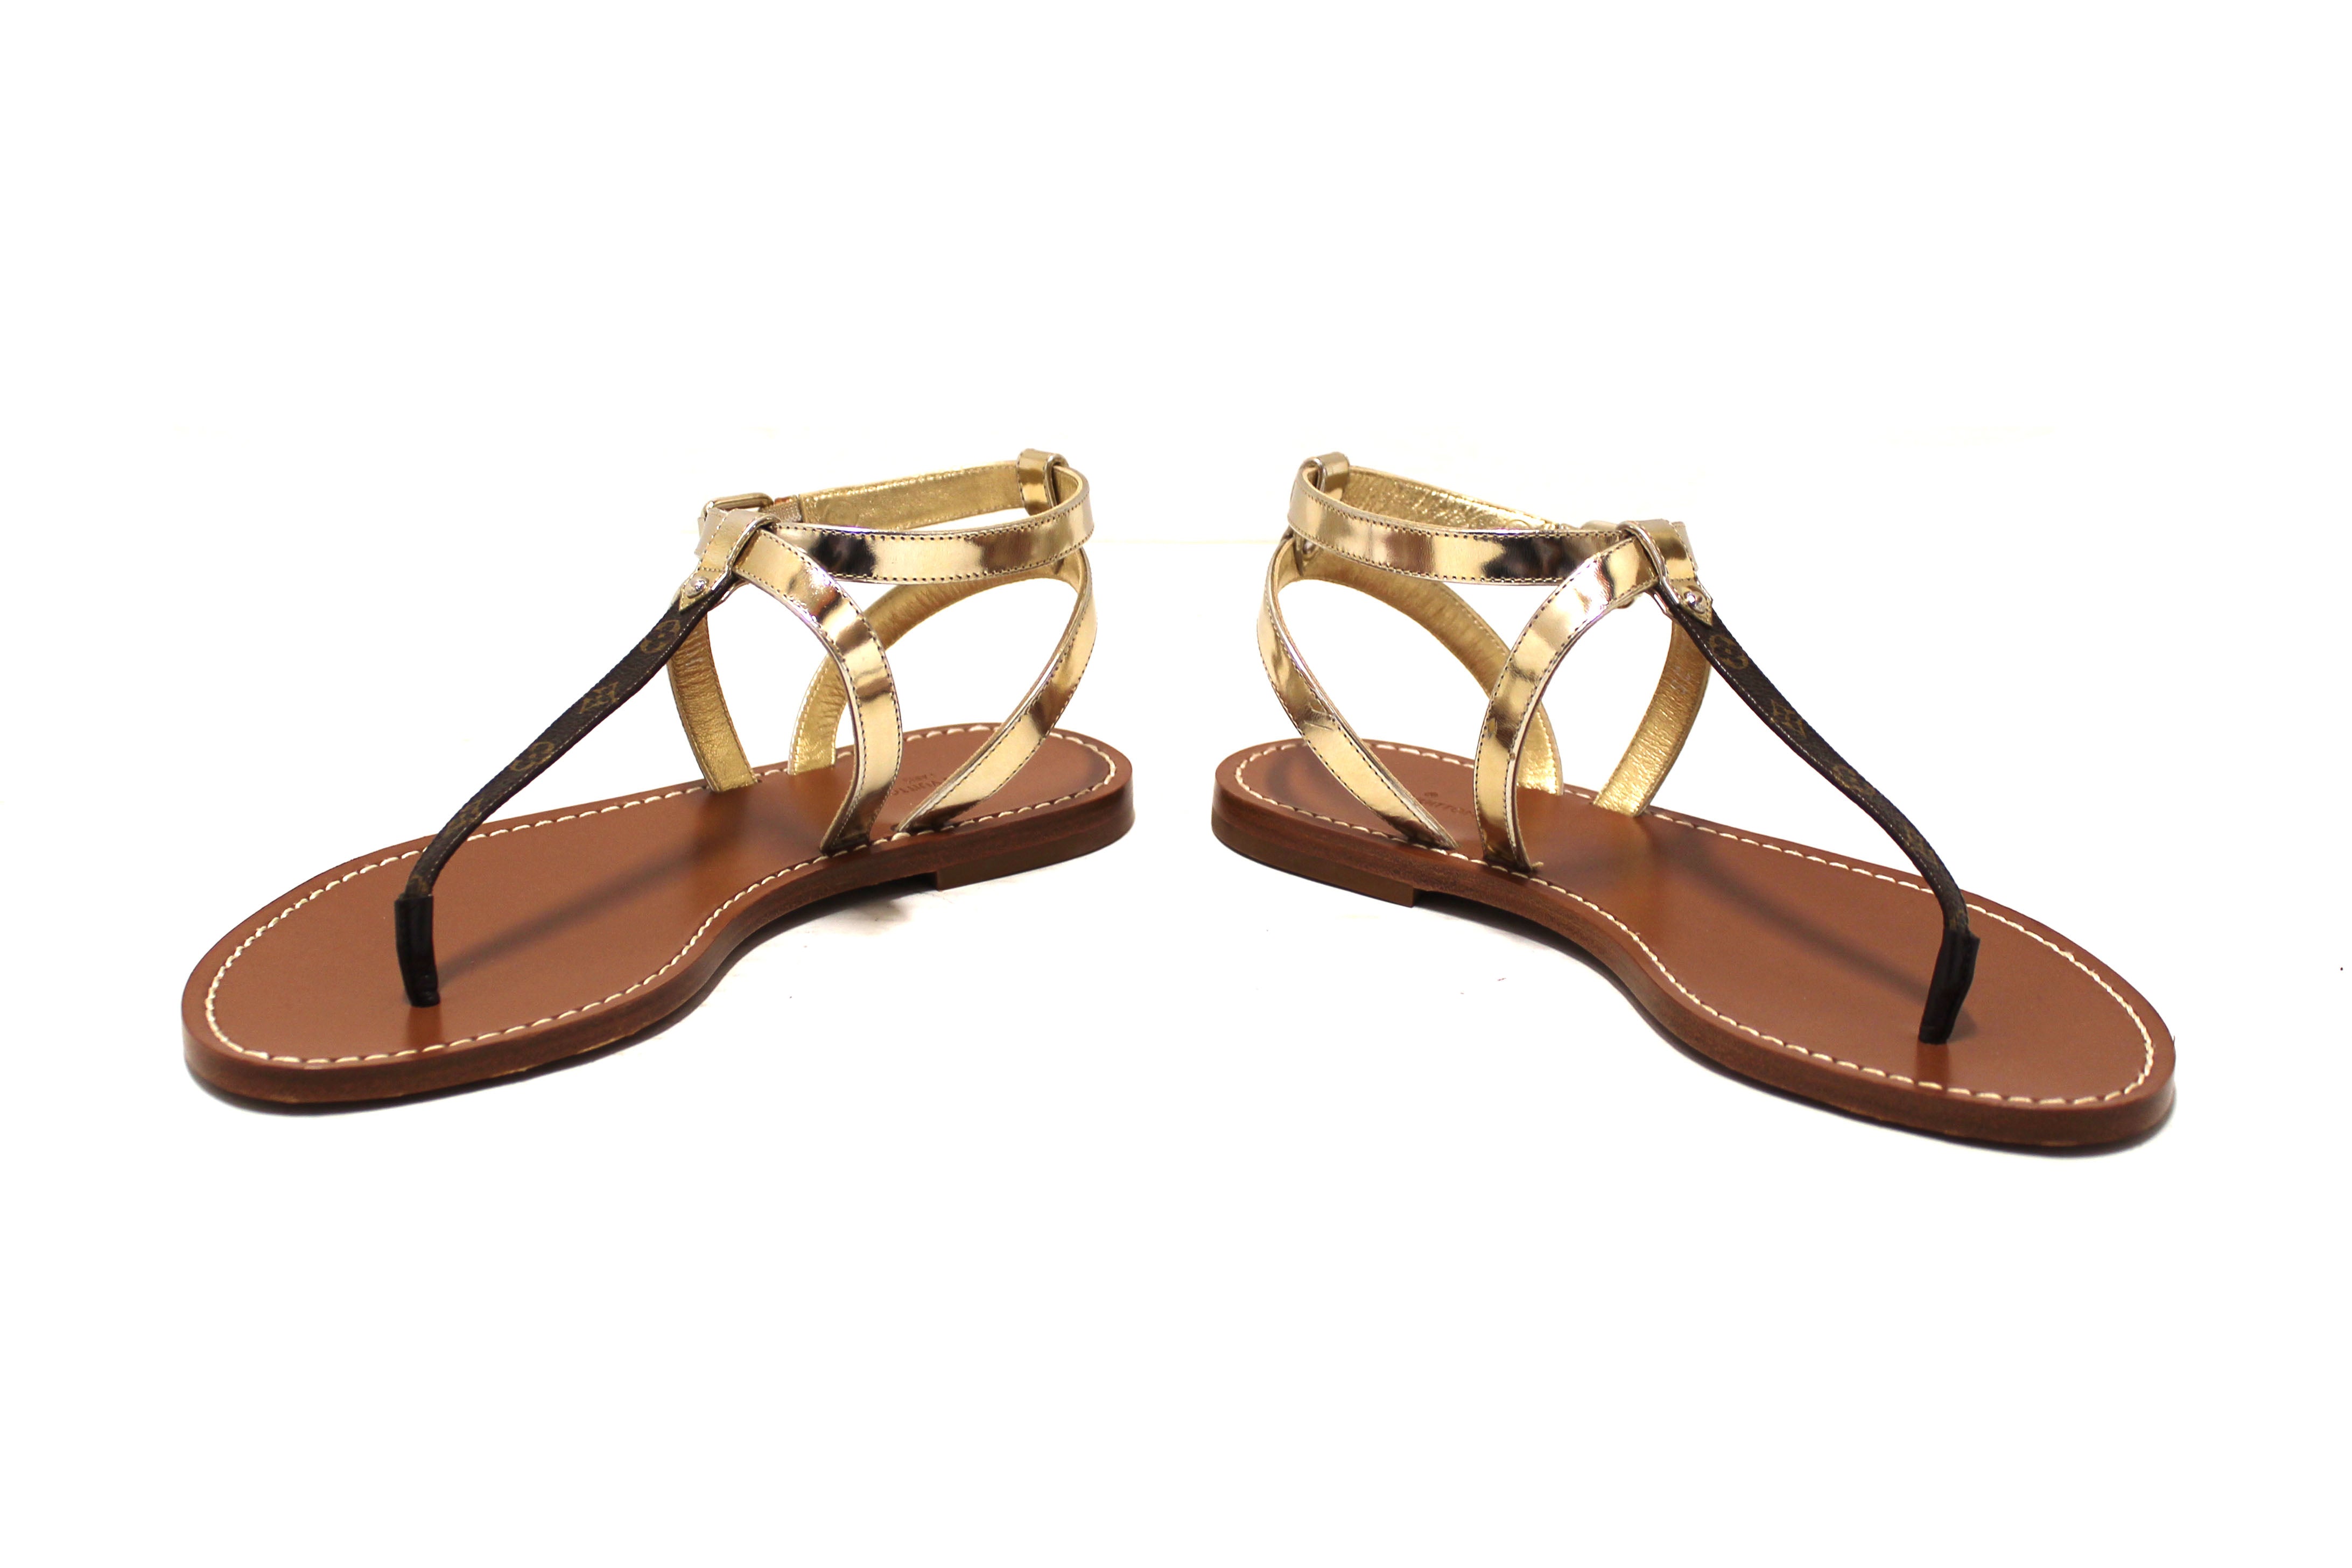 Authentic New Louis Vuitton Monogram Gold Carimbo Flat Sandals Shoes Size 37